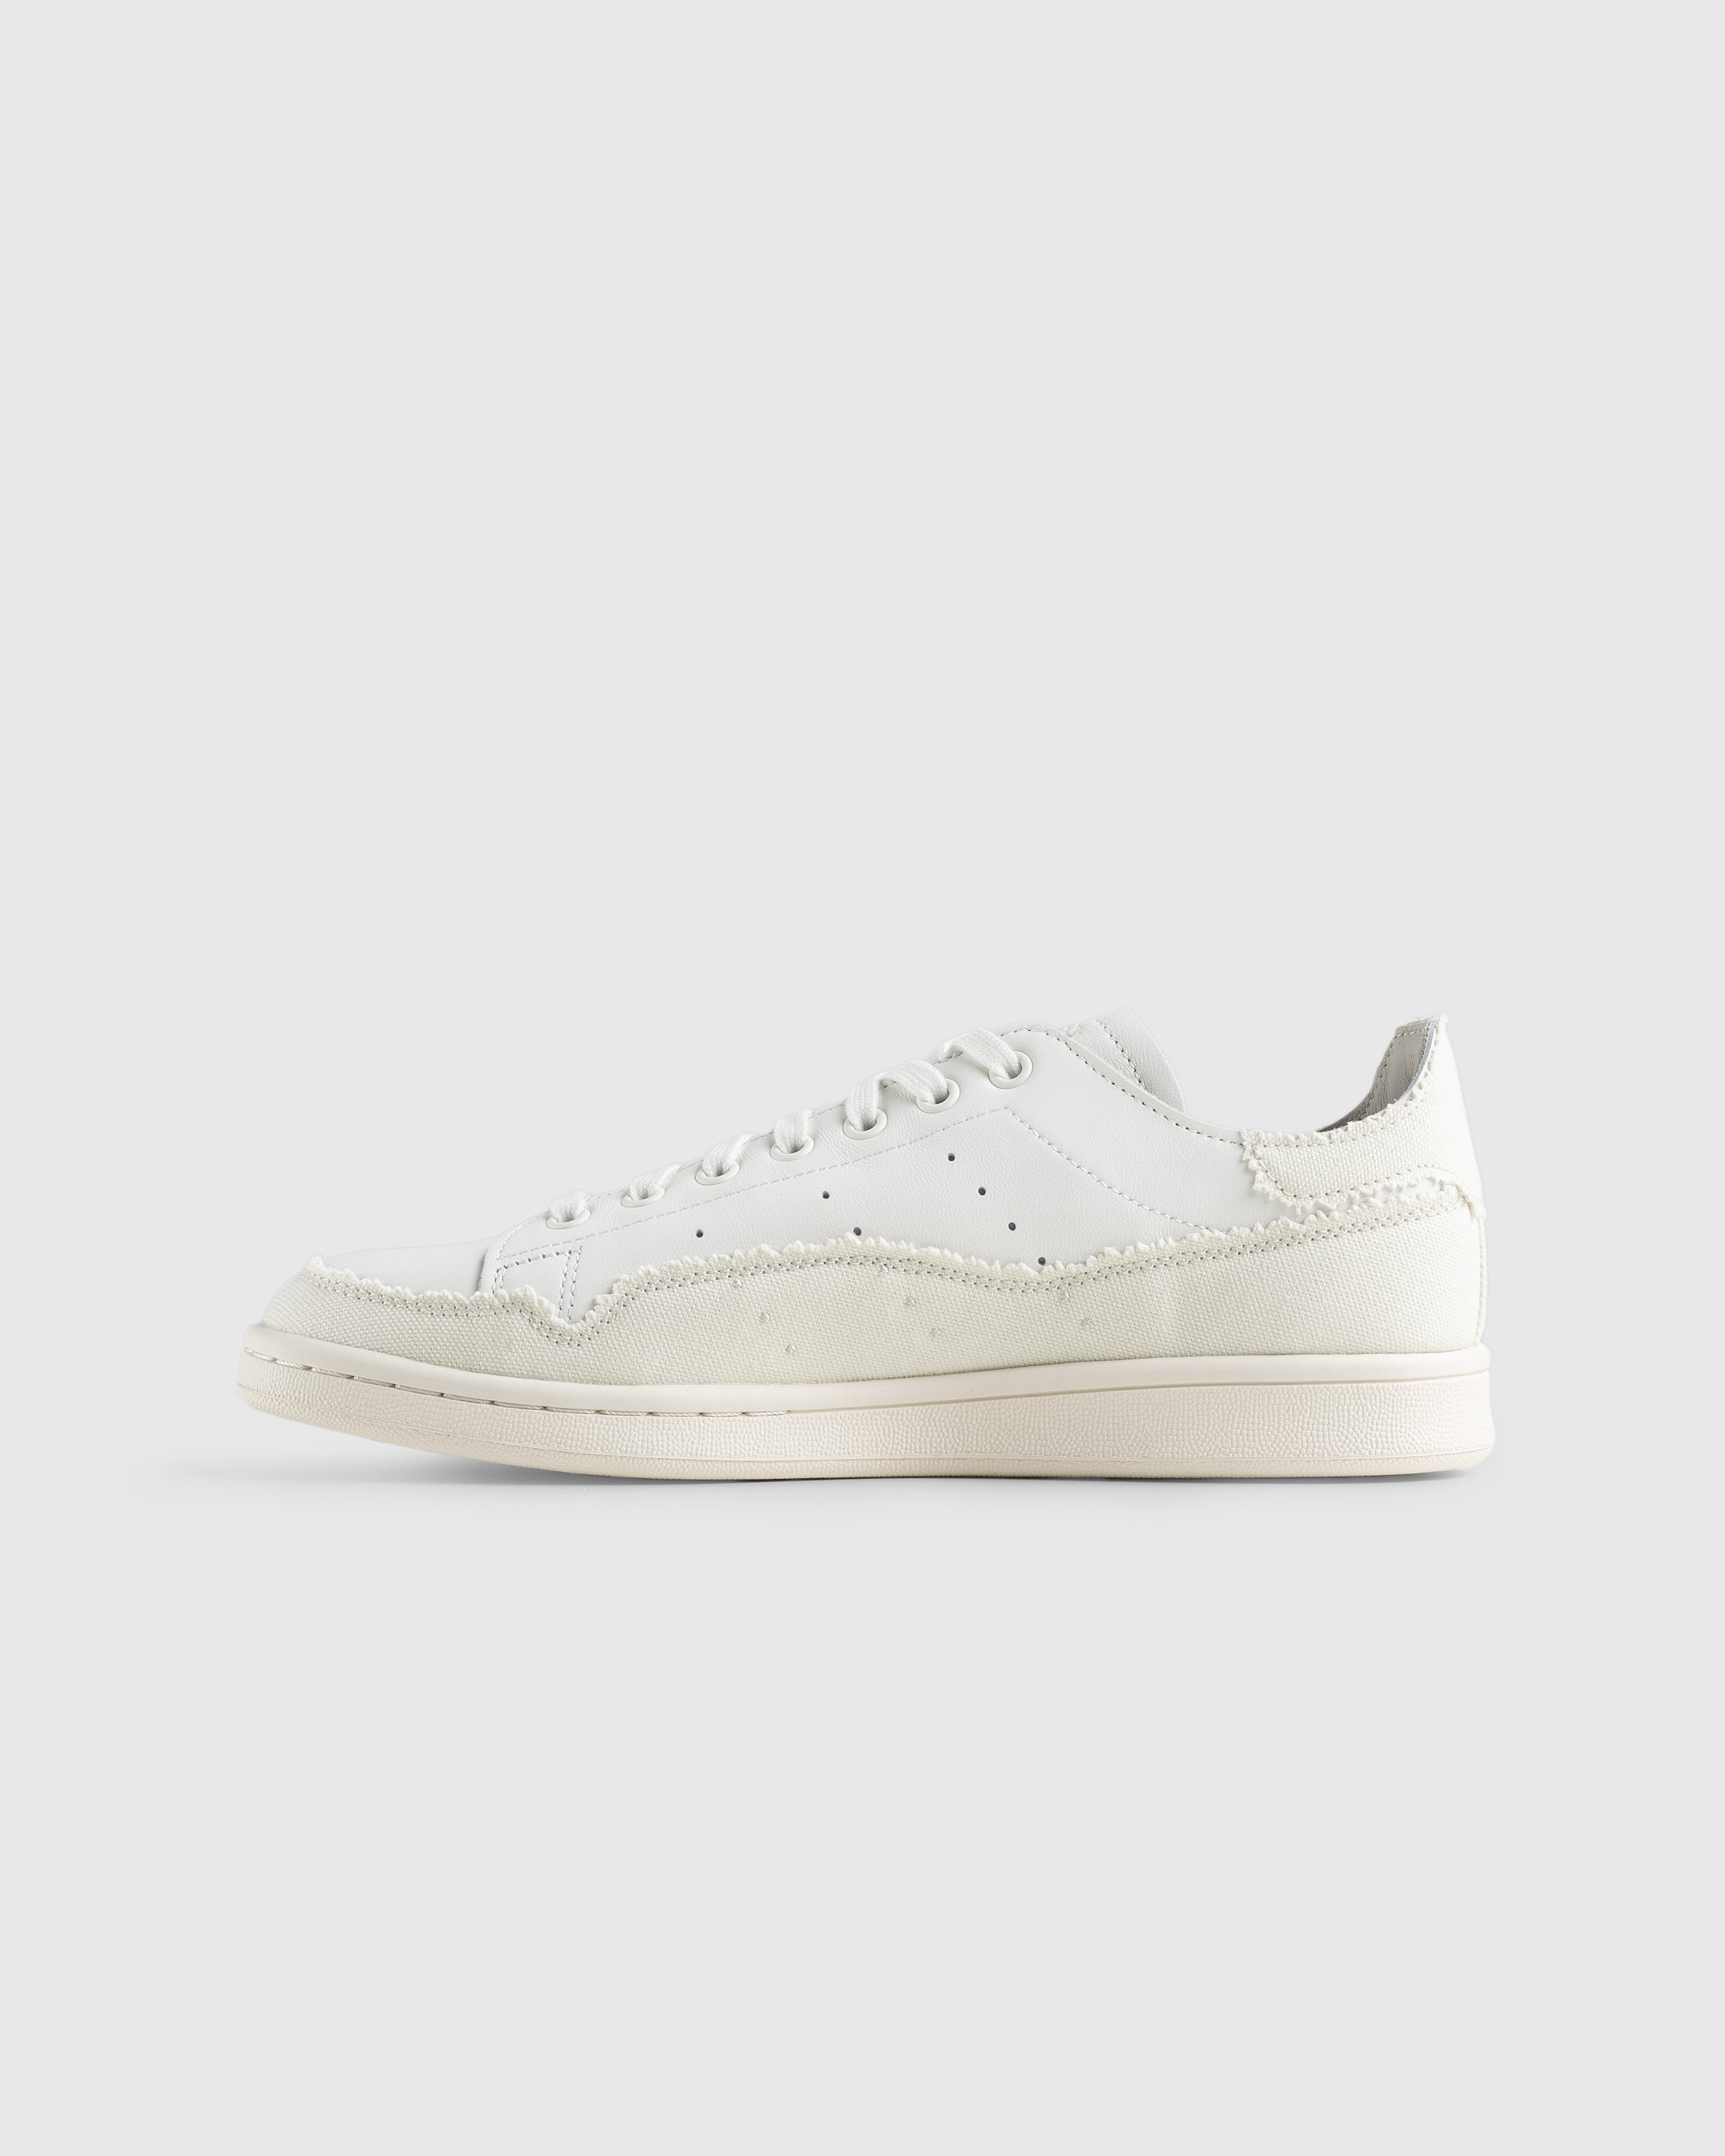 Adidas - Stan Smith Recon White - Footwear - White - Image 2